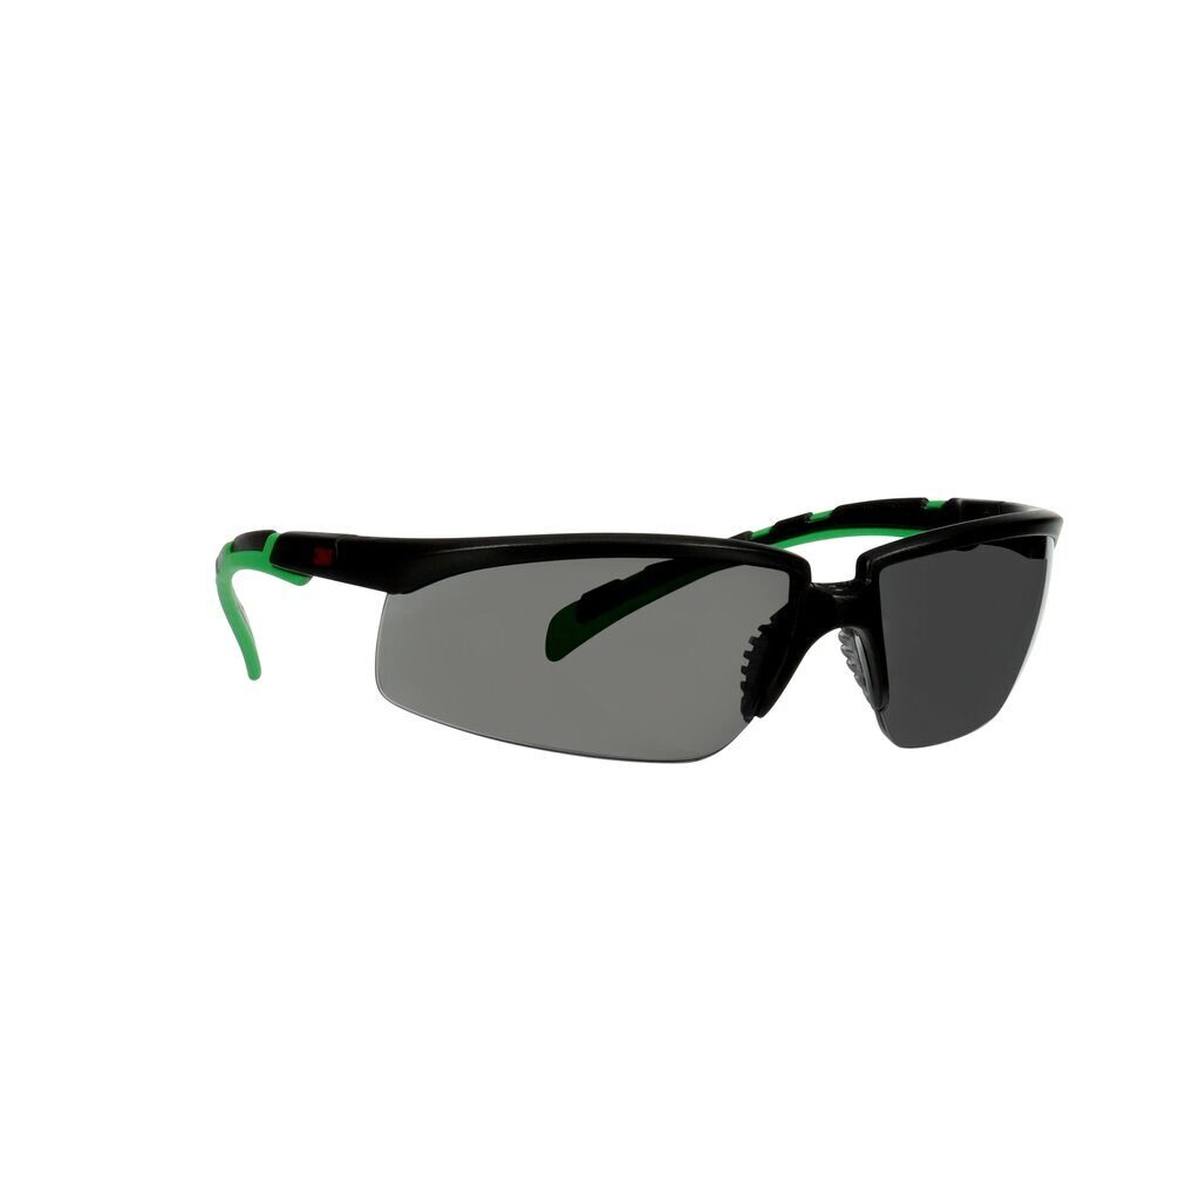 3M Solus 2000 Schutzbrillen, Rahmen schwarz/grün, Antikratz-Beschichtung + (K), graue Scheibe IR 3,0, S2030ASP-BLK